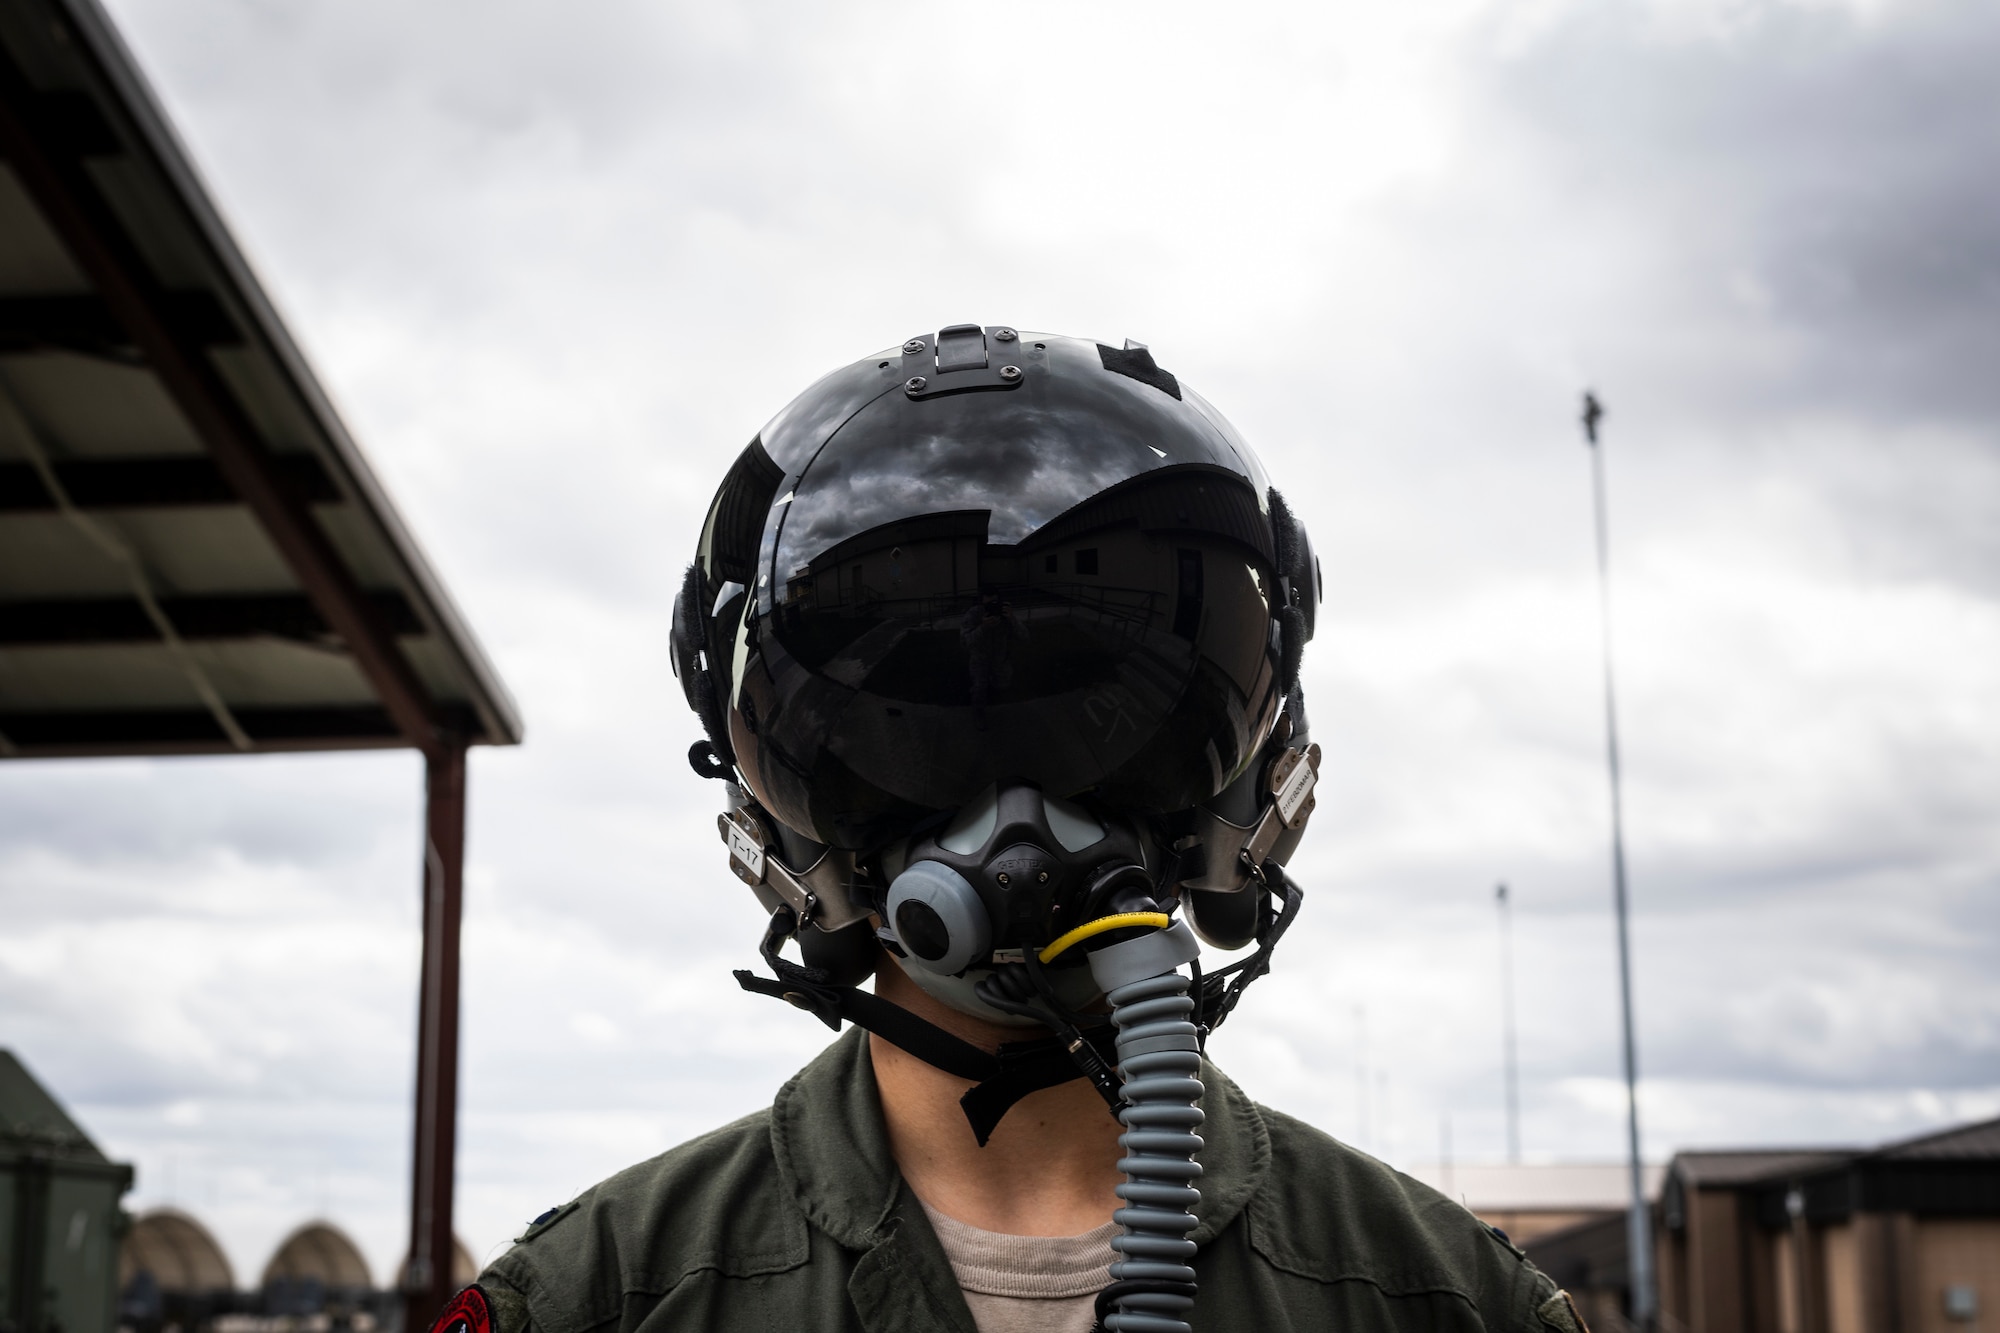 A photo of a pilot wearing a helmet